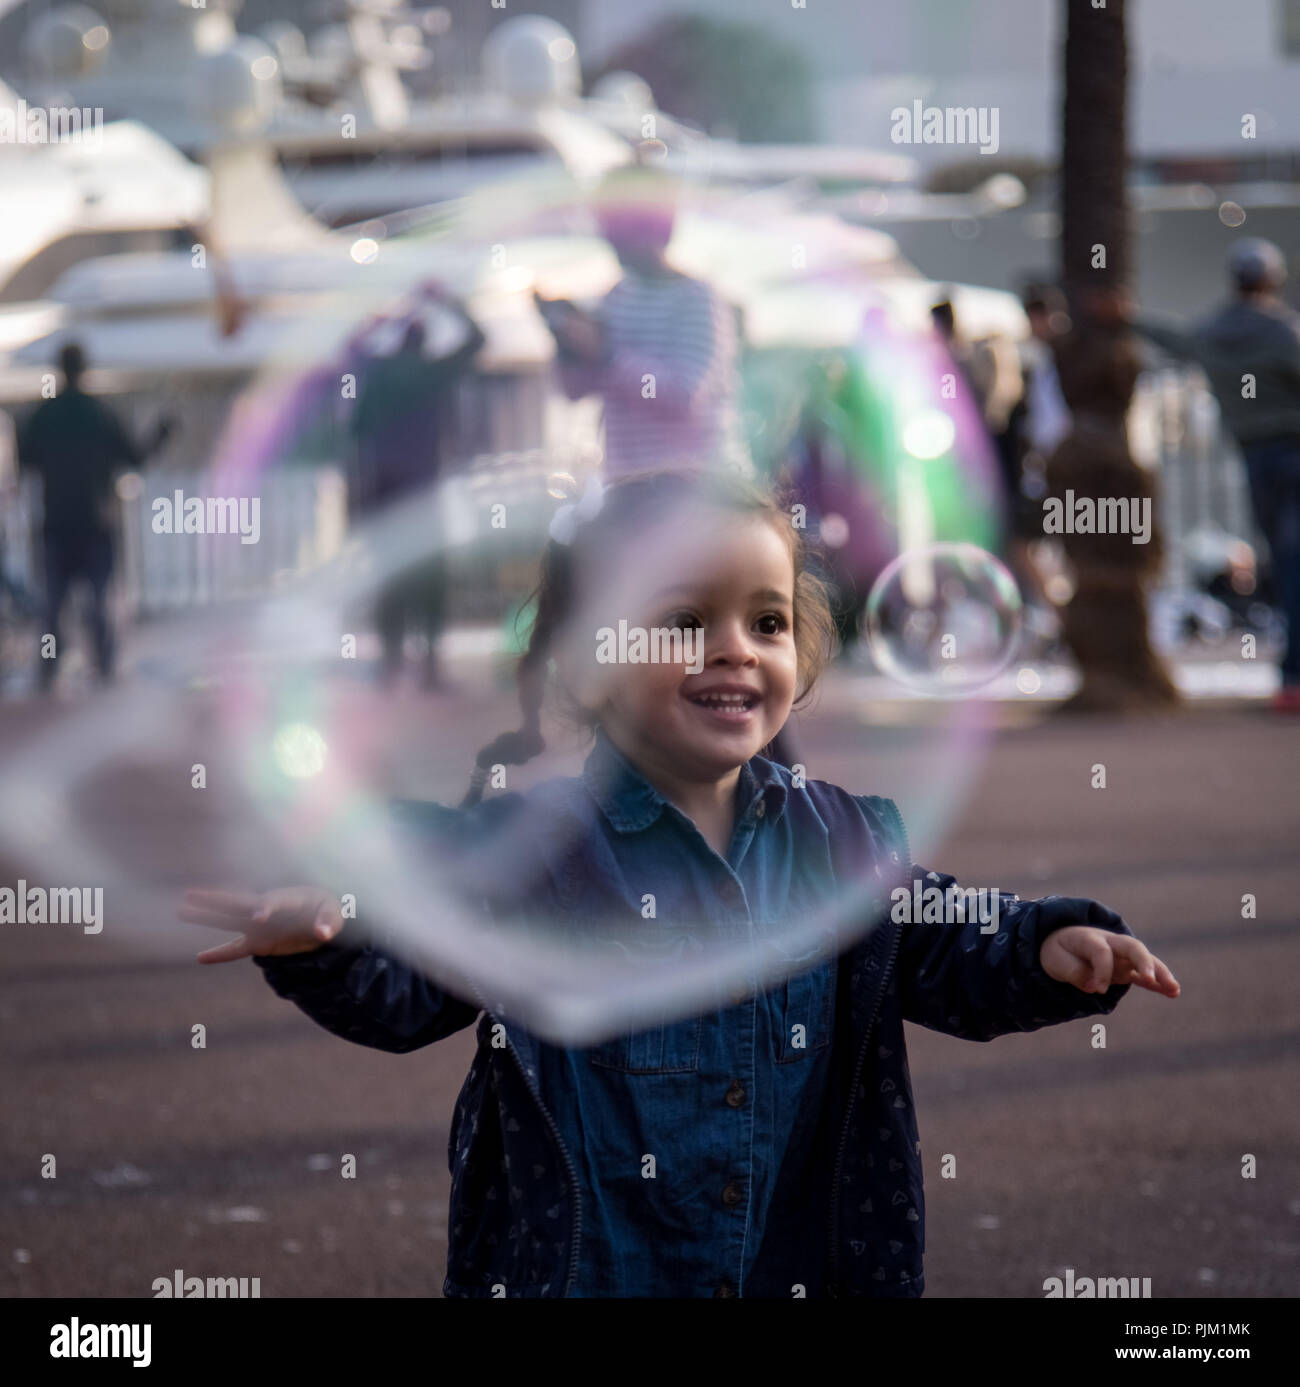 Bambina è felice di gigantesche bolle di sapone, sorriso luminoso, persone e marina in background Foto Stock